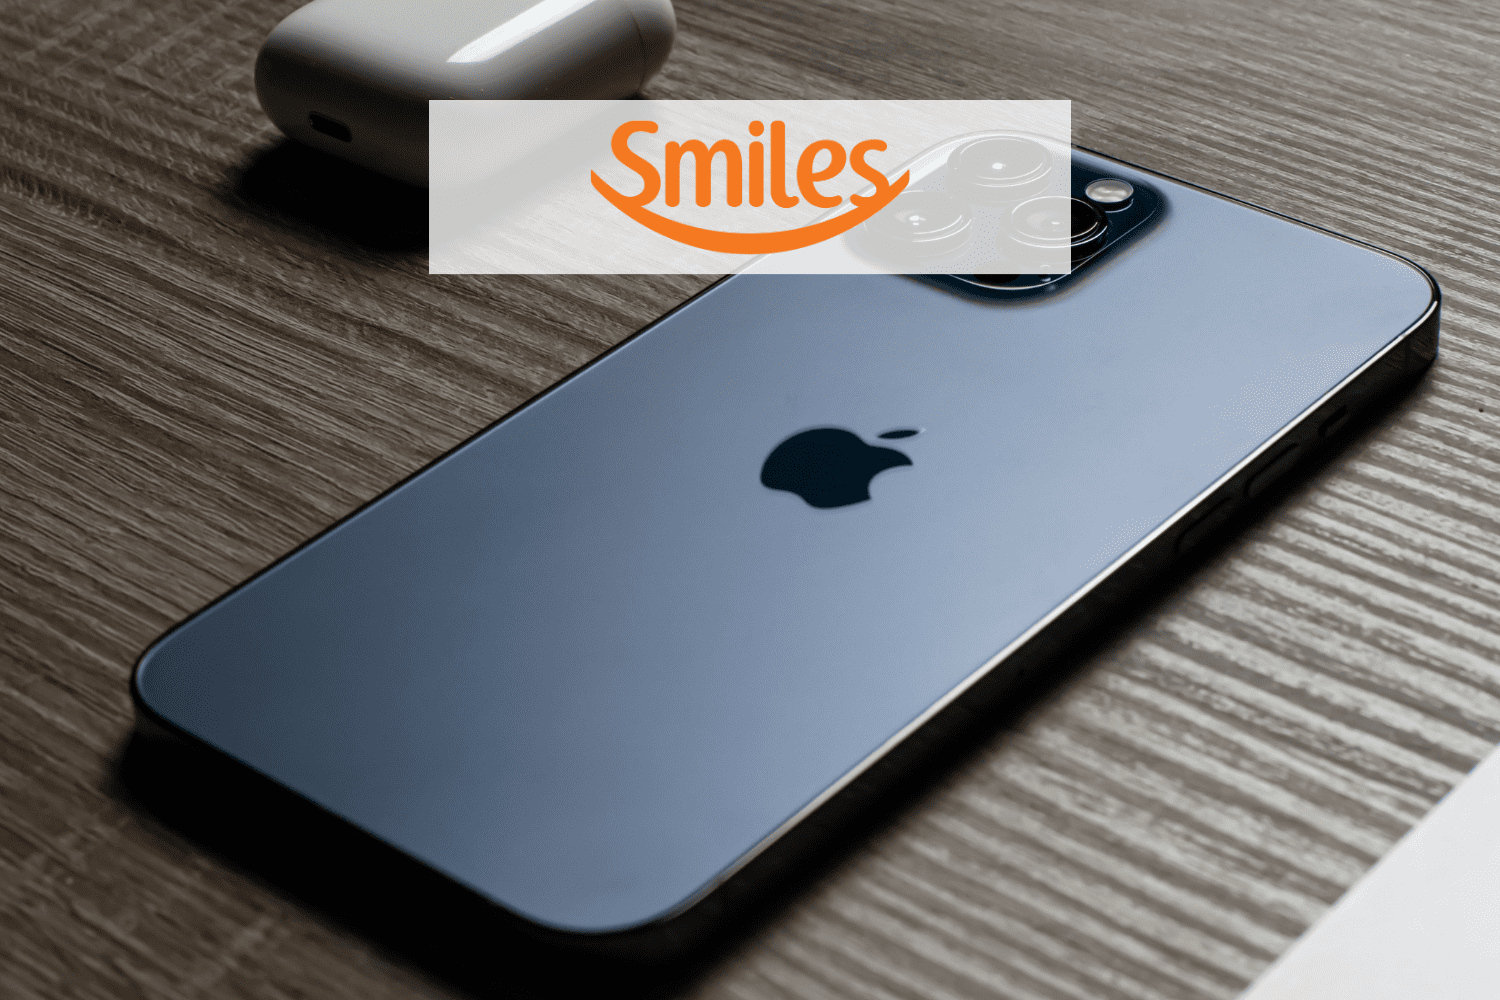 iphone com logo Smiles pontos Smiles